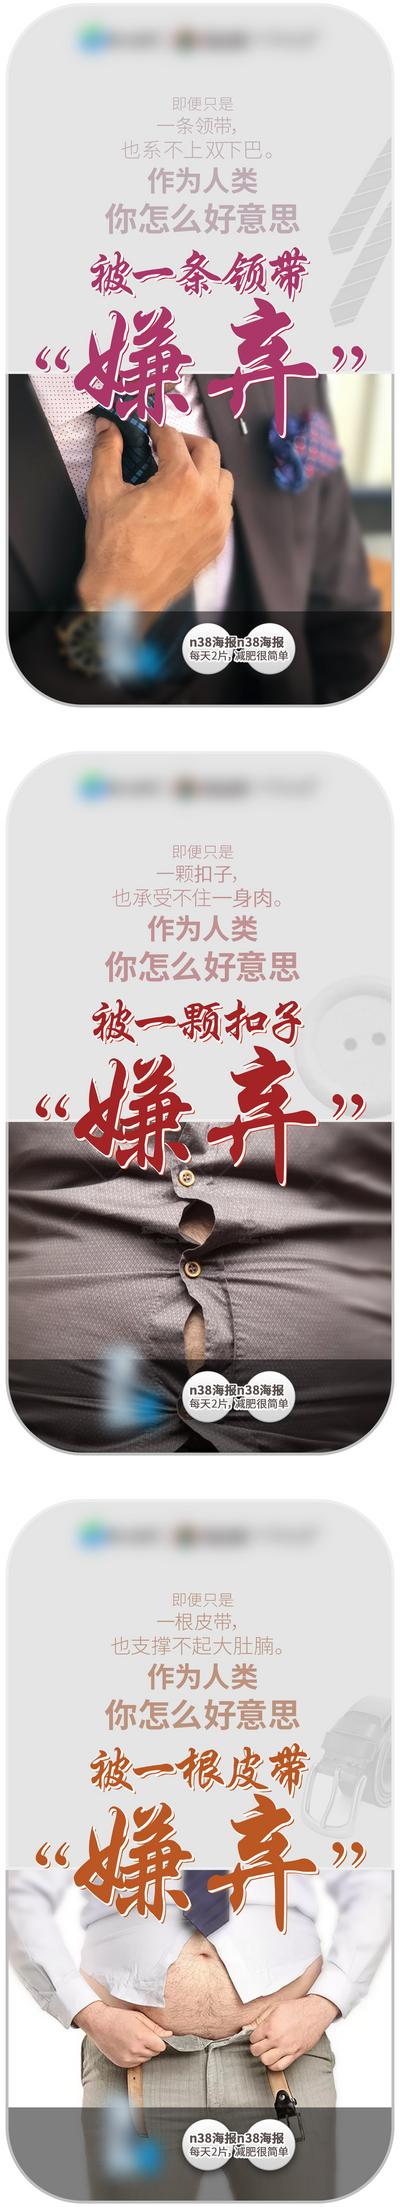 【南门网】海报 产品 瘦身 减肥 身材 健康 创意 系列 